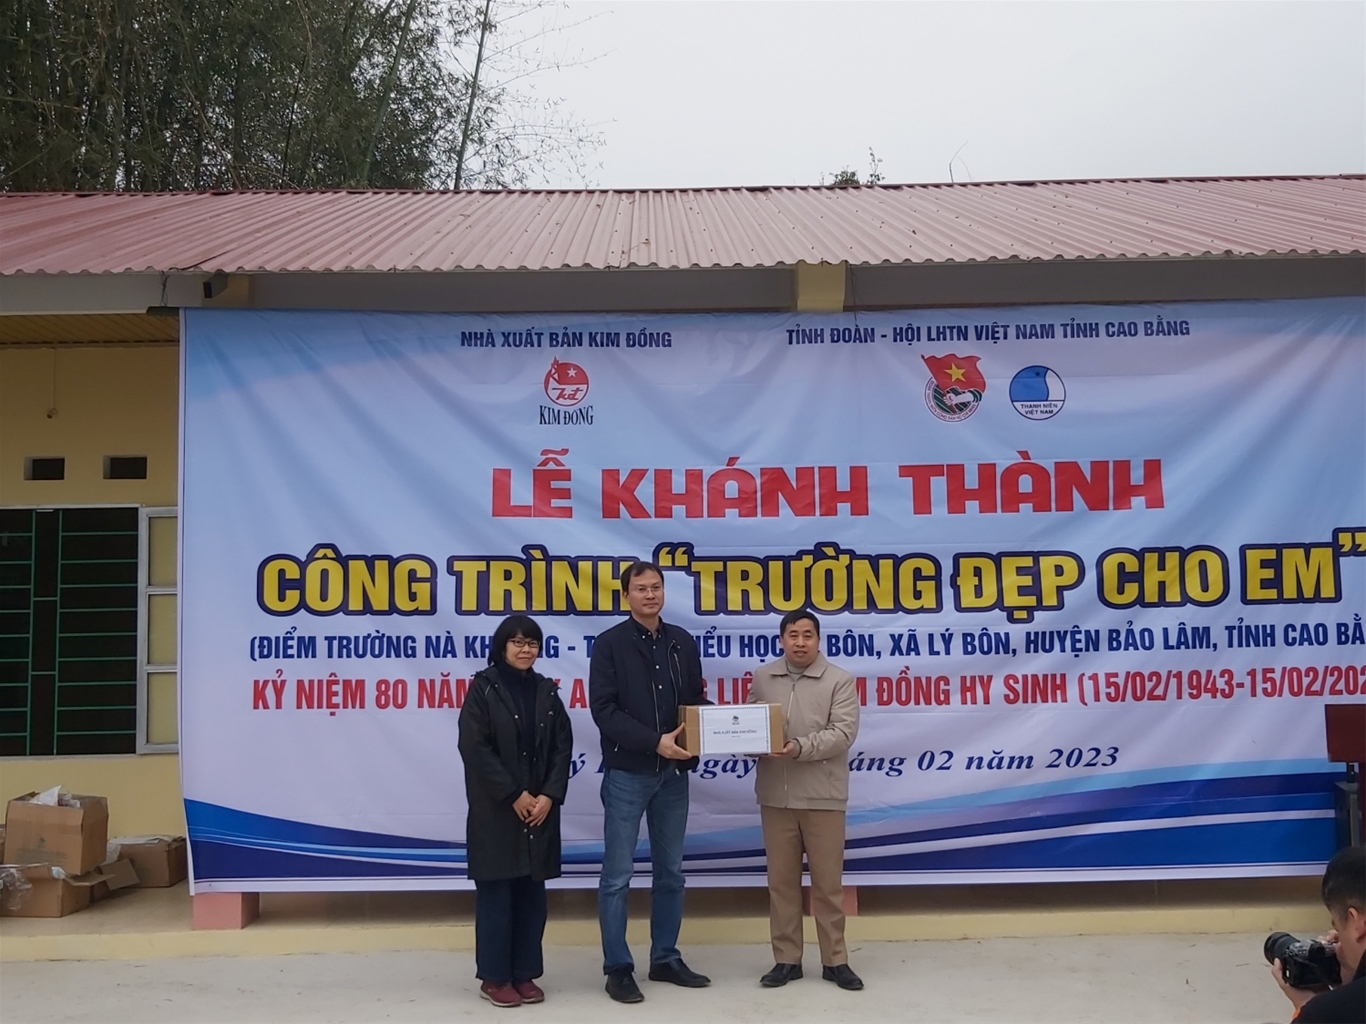 Nhà Xuất bản Kim Đồng tặng quà cho Điểm trường Nà Khuông